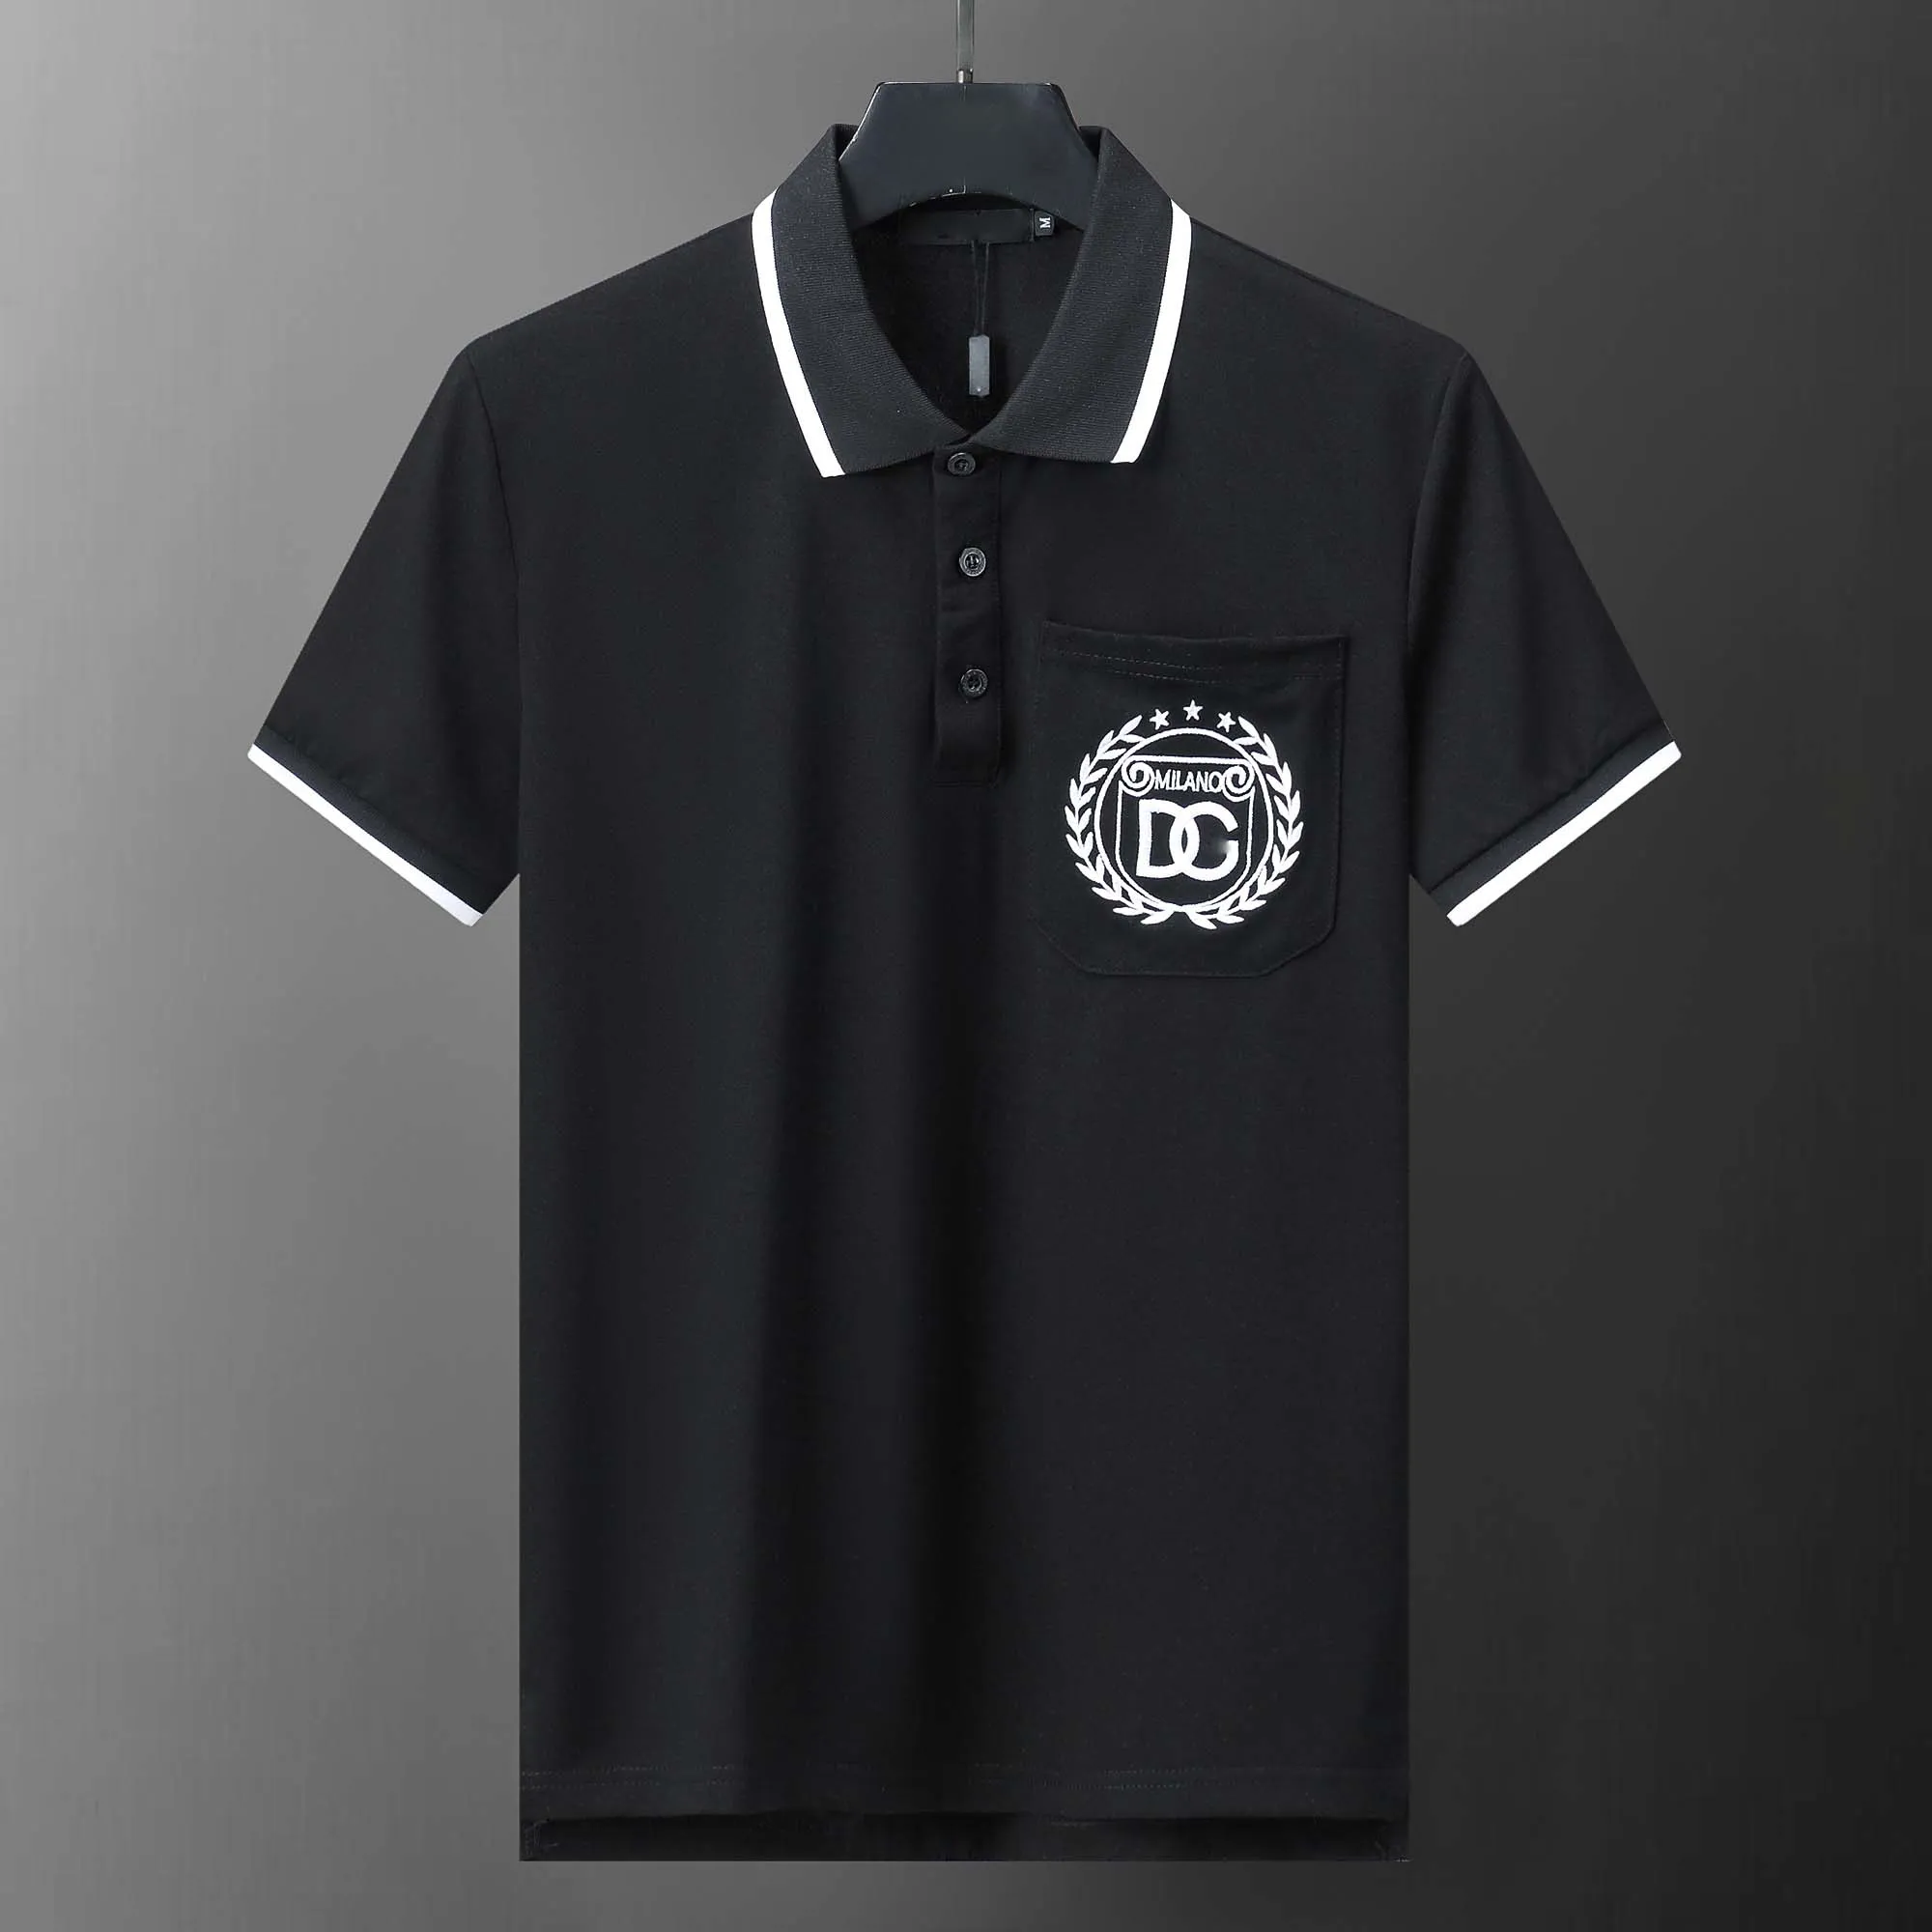 Herren-Poloshirt, Designer-Polohemden für Herren, modischer Fokus, Stickerei, Schlange, Strumpfband, kleine Bienen, Druckmuster, Kleidung, Kleidung, T-Shirt, schwarz-weißes Herren-T-Shirt Nr. 051